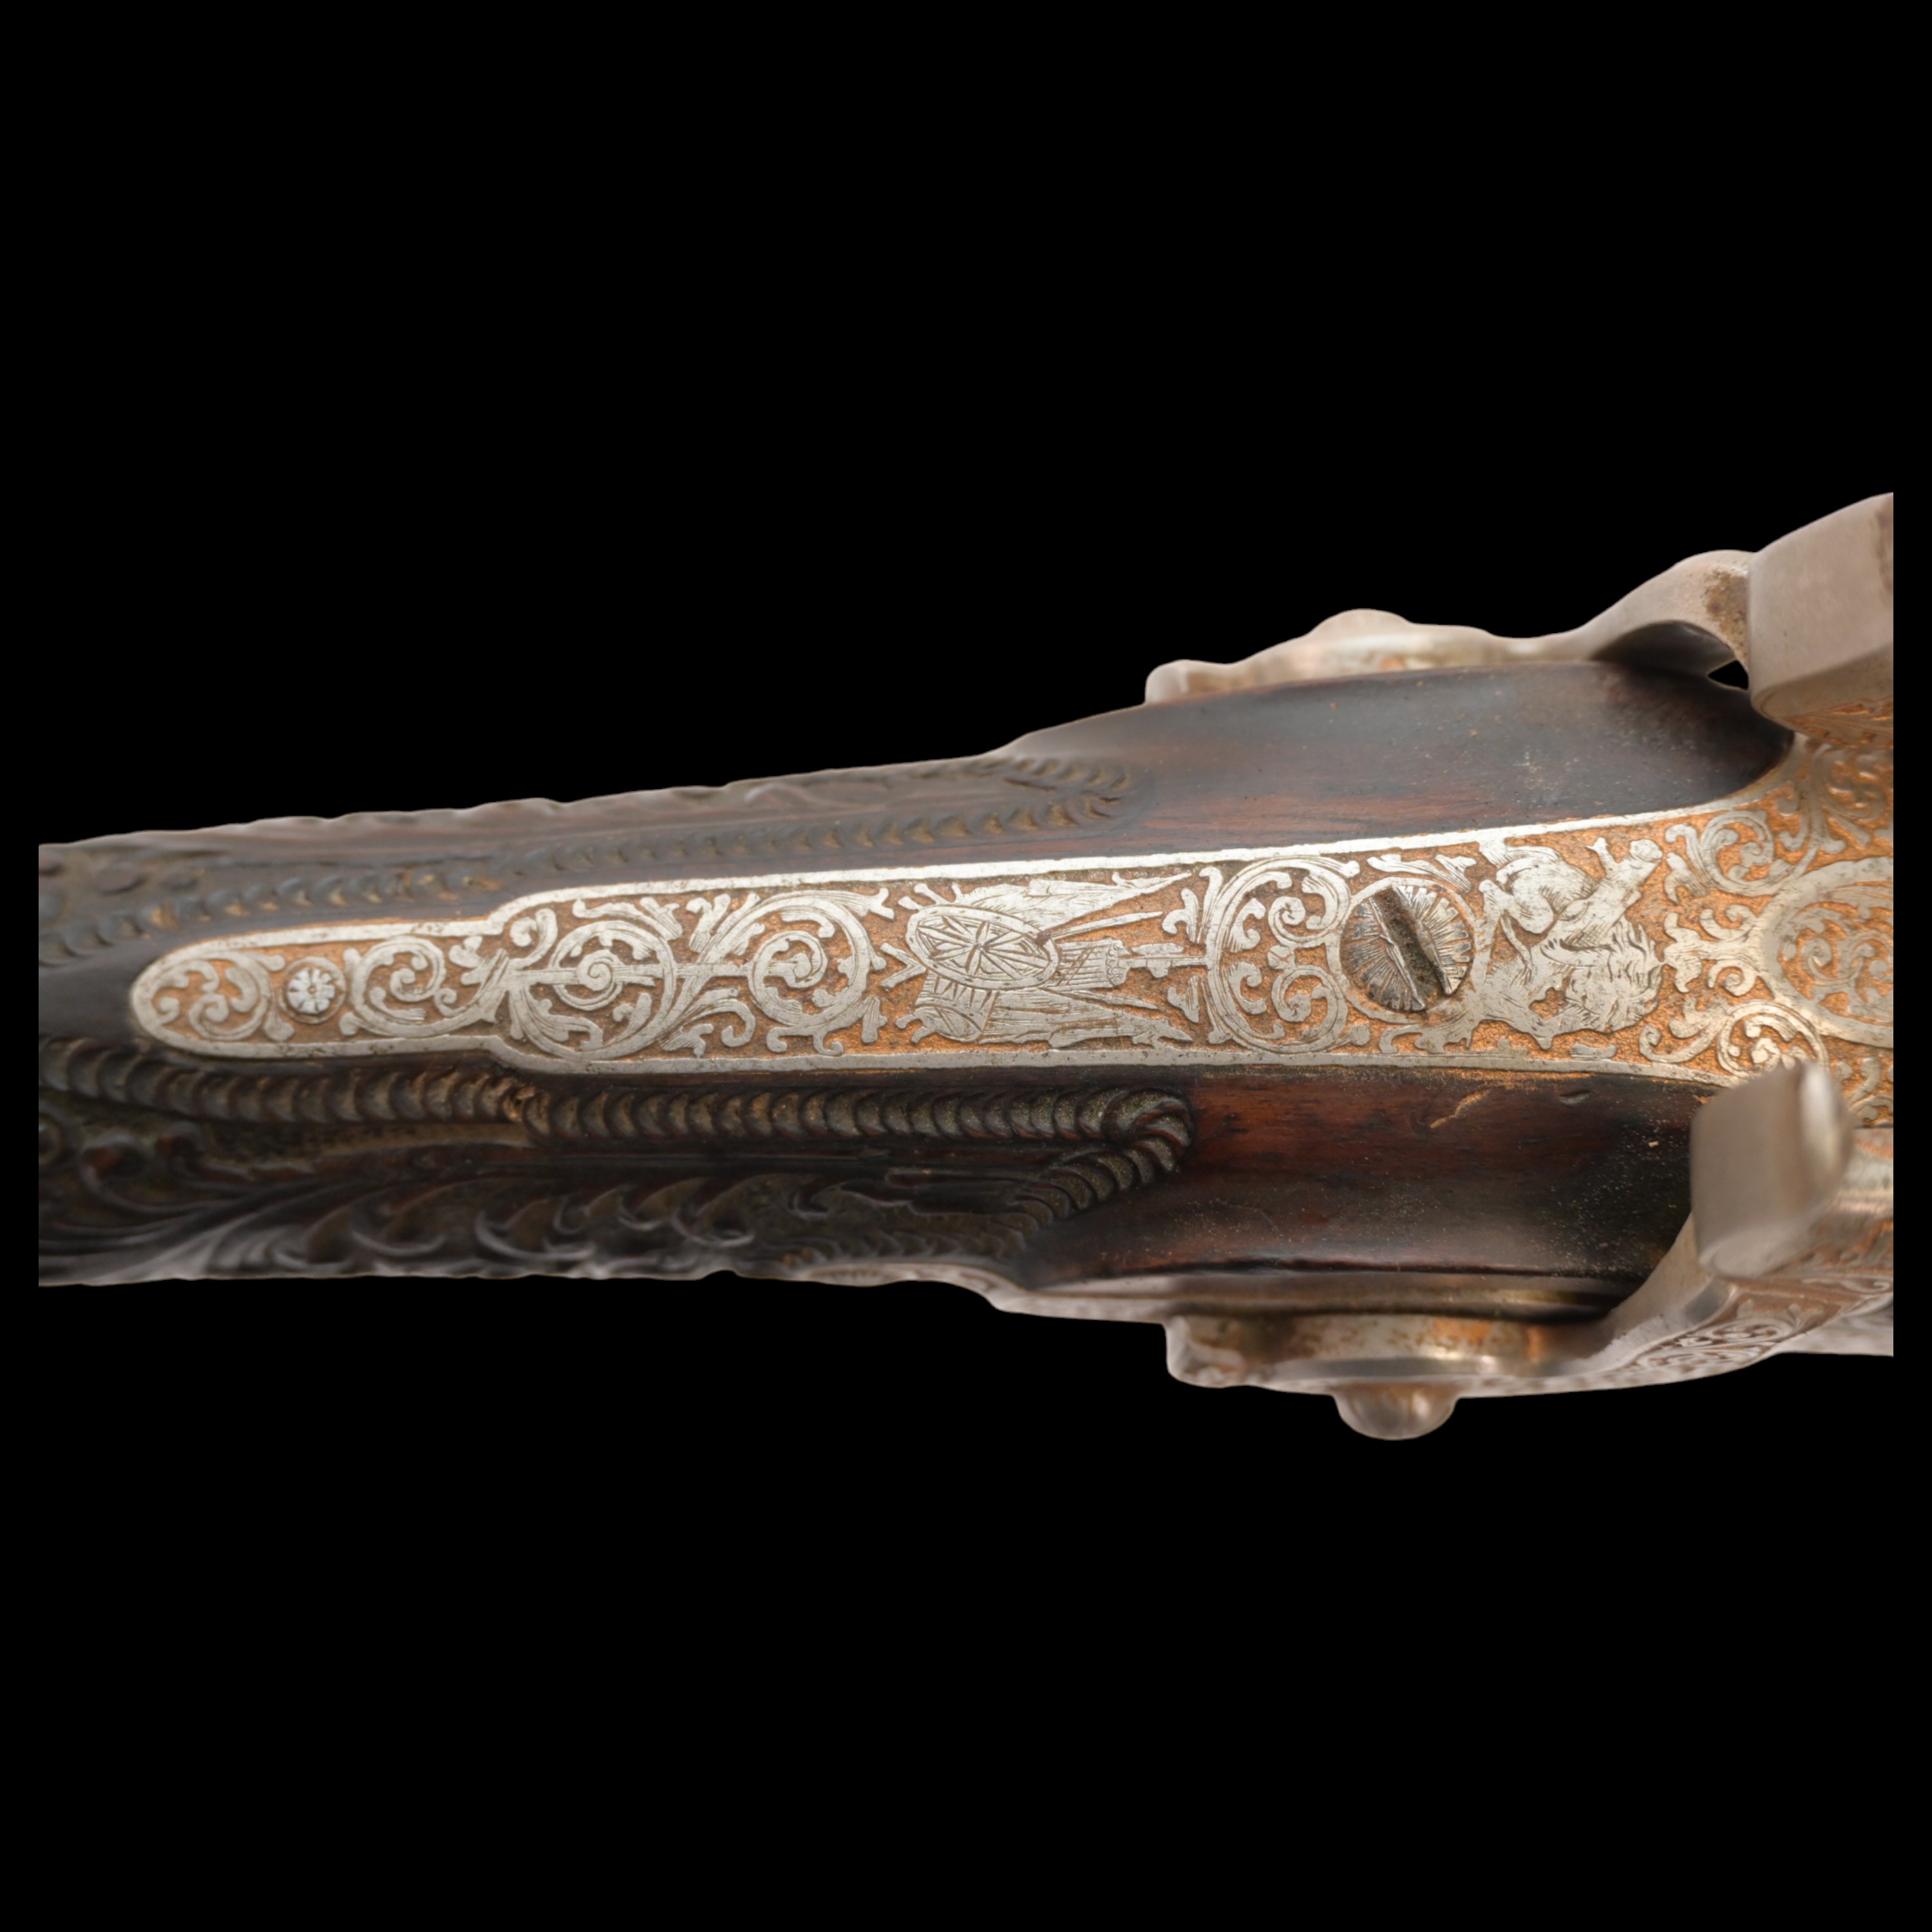 Rare Double-barrel percussion shotgun, Eusebio Zuloaga, royal gunsmith, Spain, mid-19th century. - Image 14 of 26